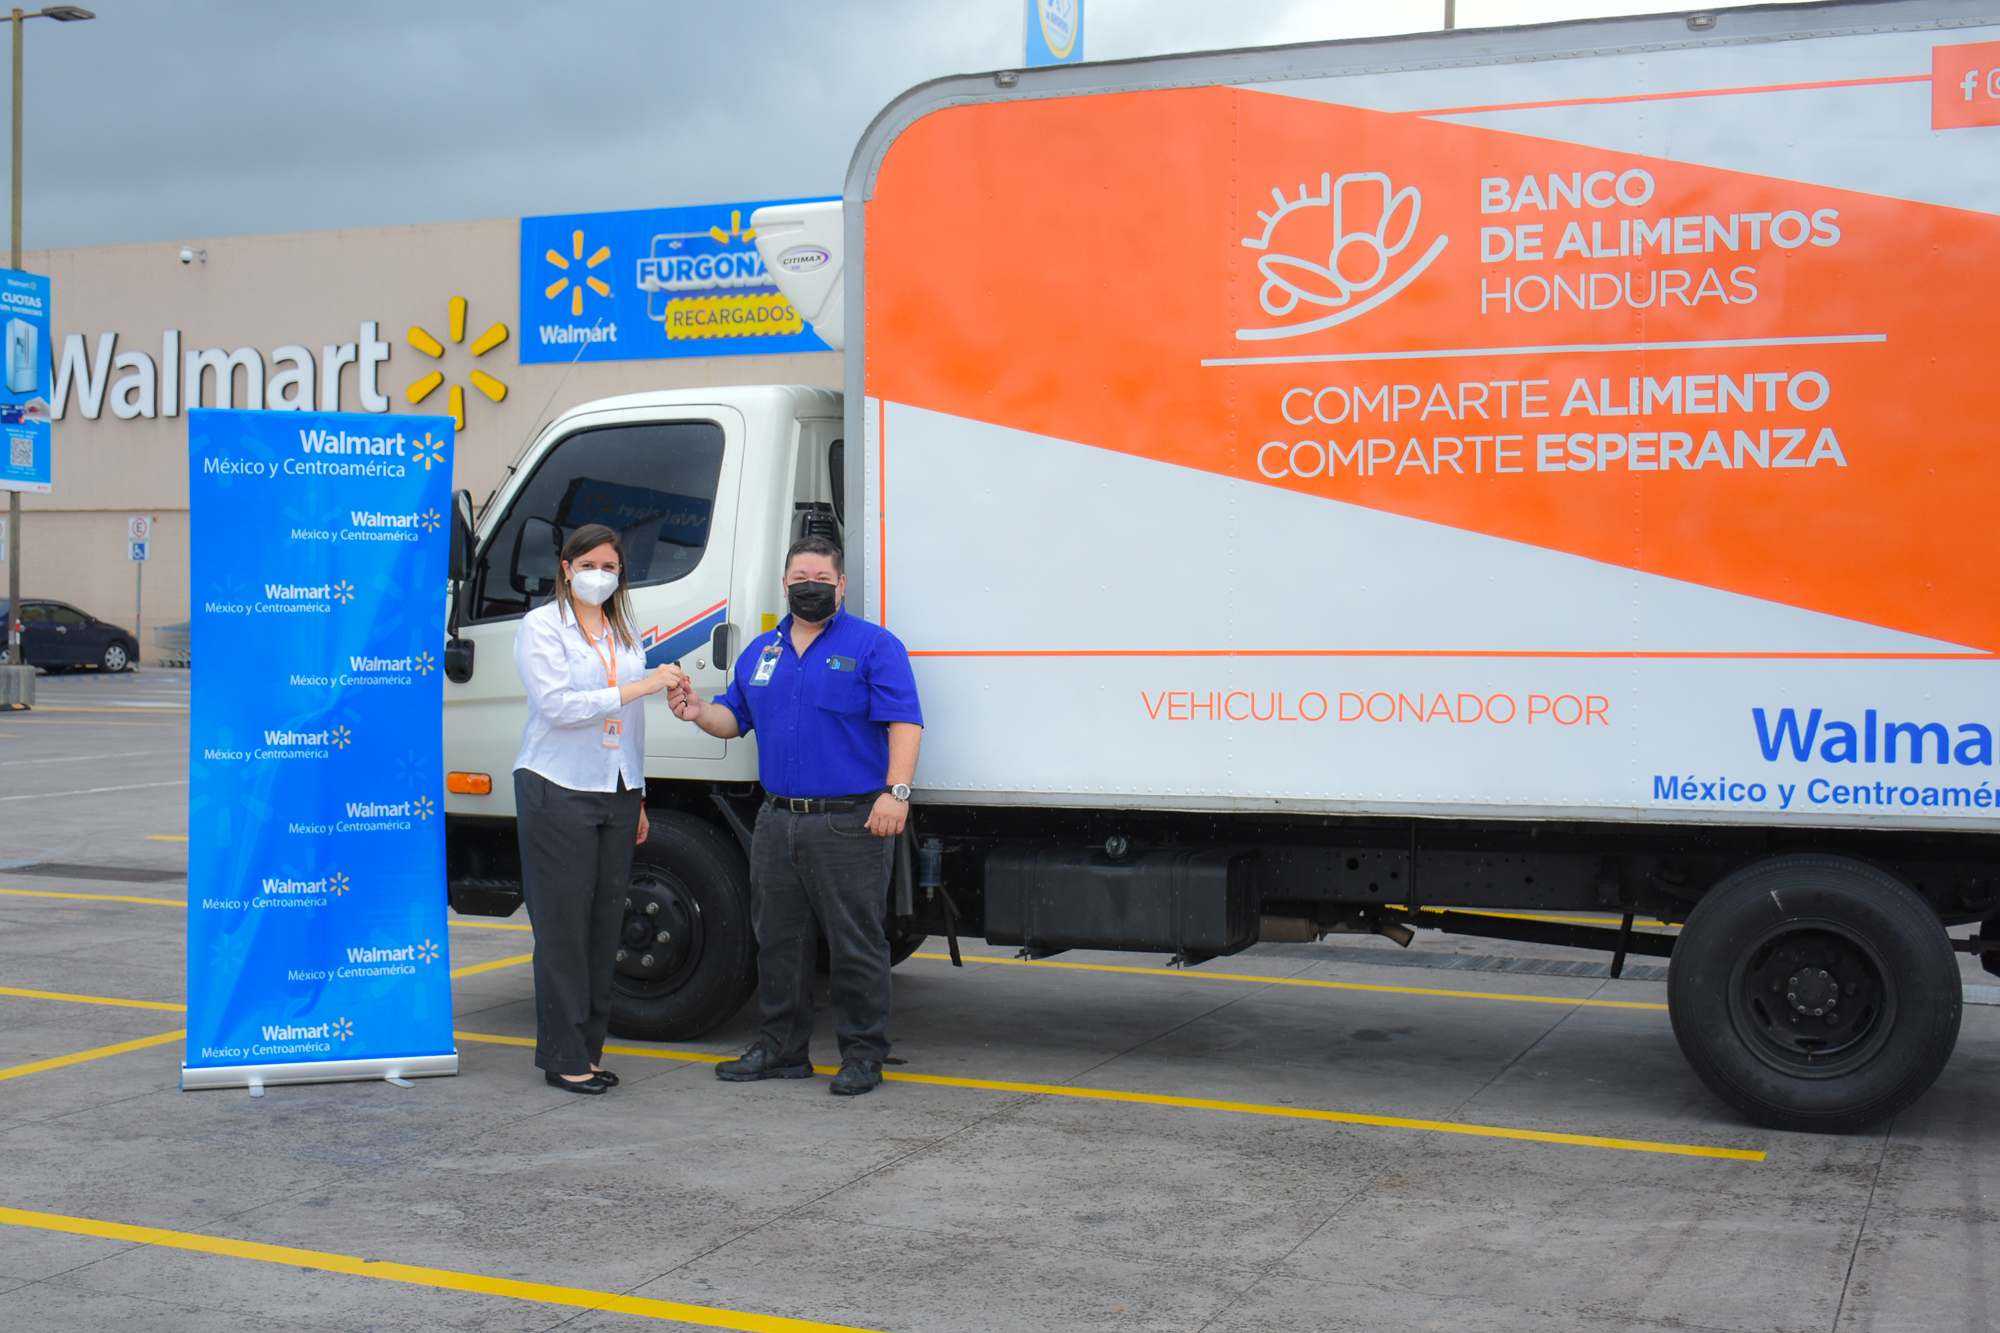 Walmart dona un camión refrigerado al Banco de Alimentos de Honduras